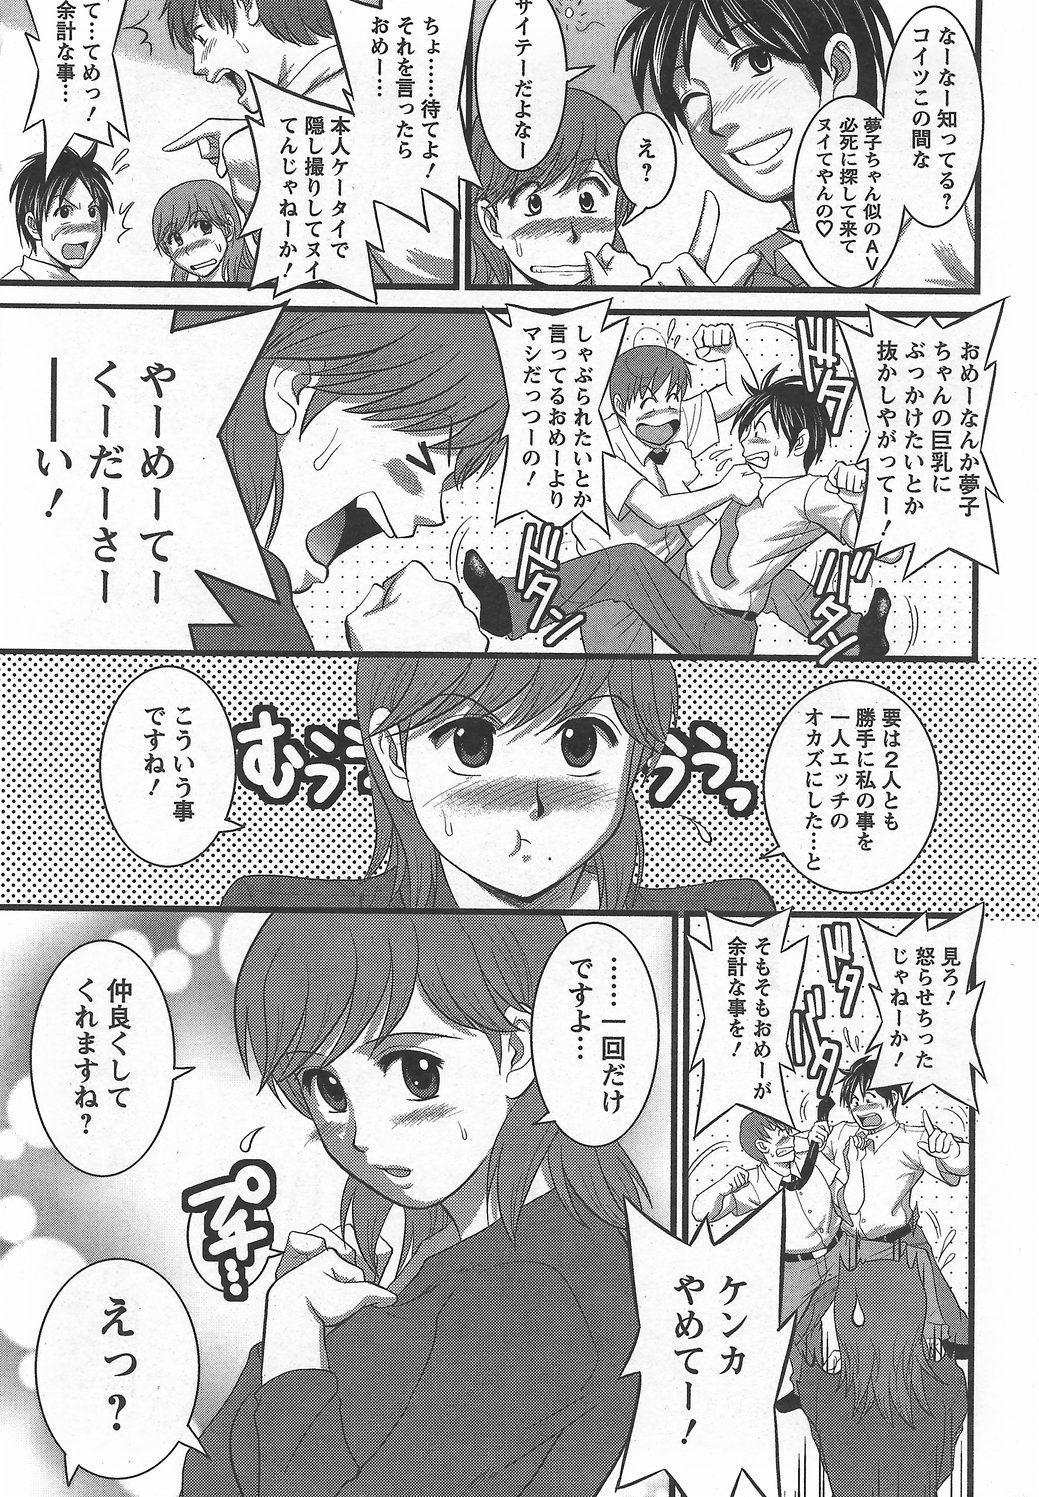 Haken no Muuko-san 6 [Saigado] page 12 full